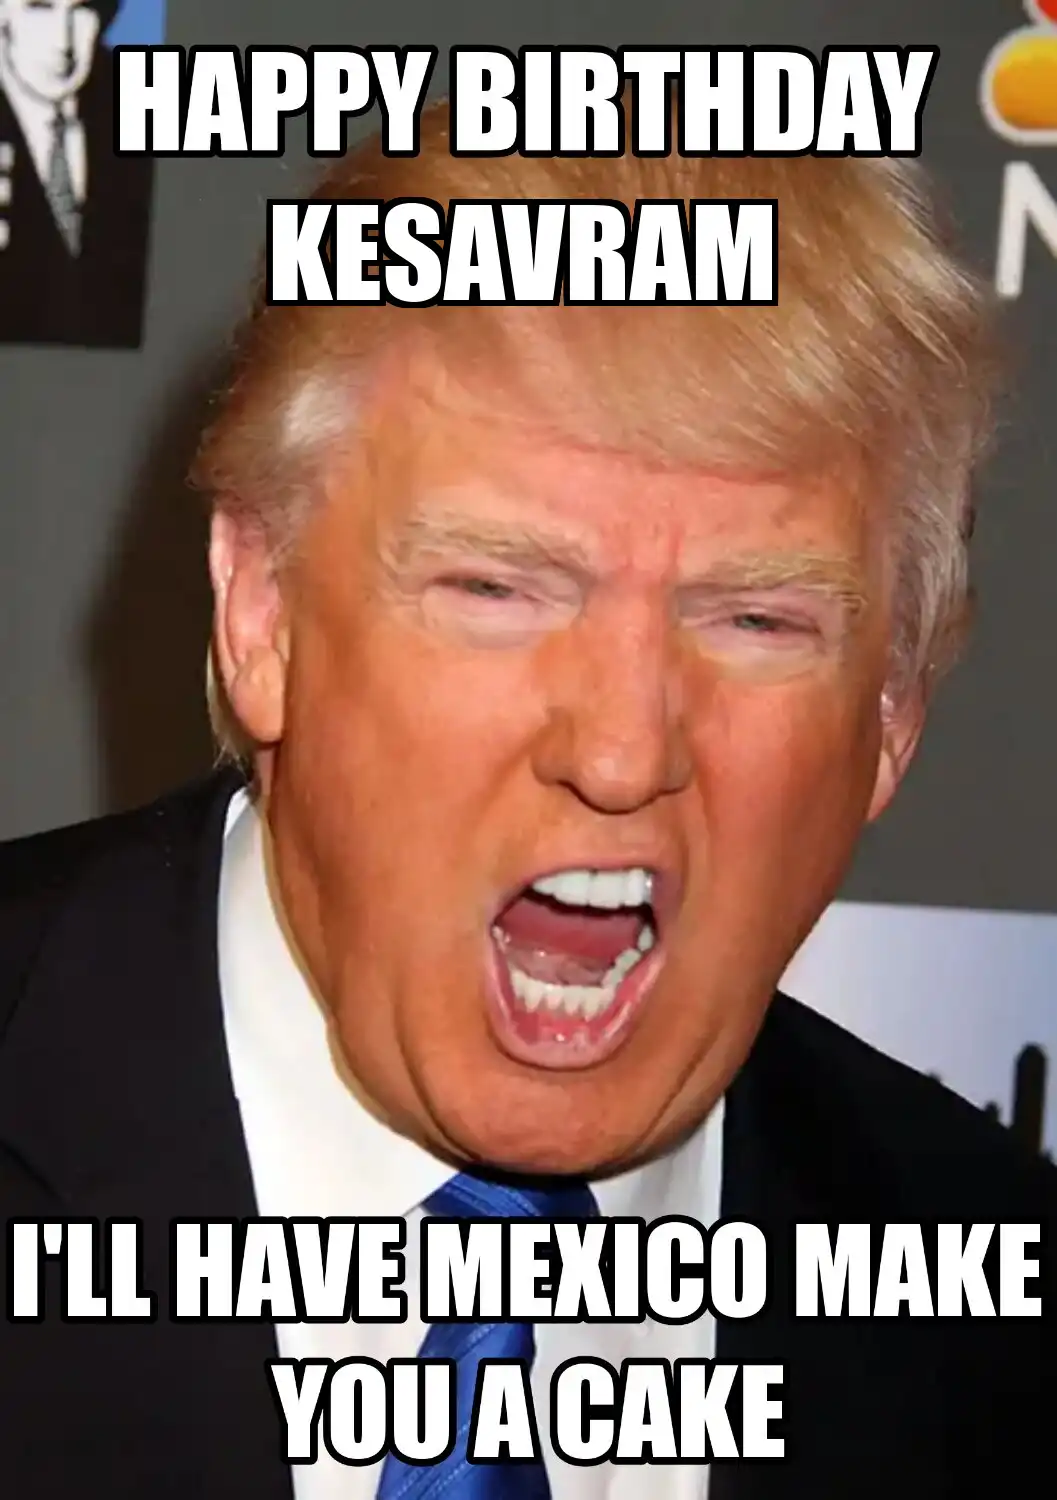 Happy Birthday Kesavram Mexico Make You A Cake Meme